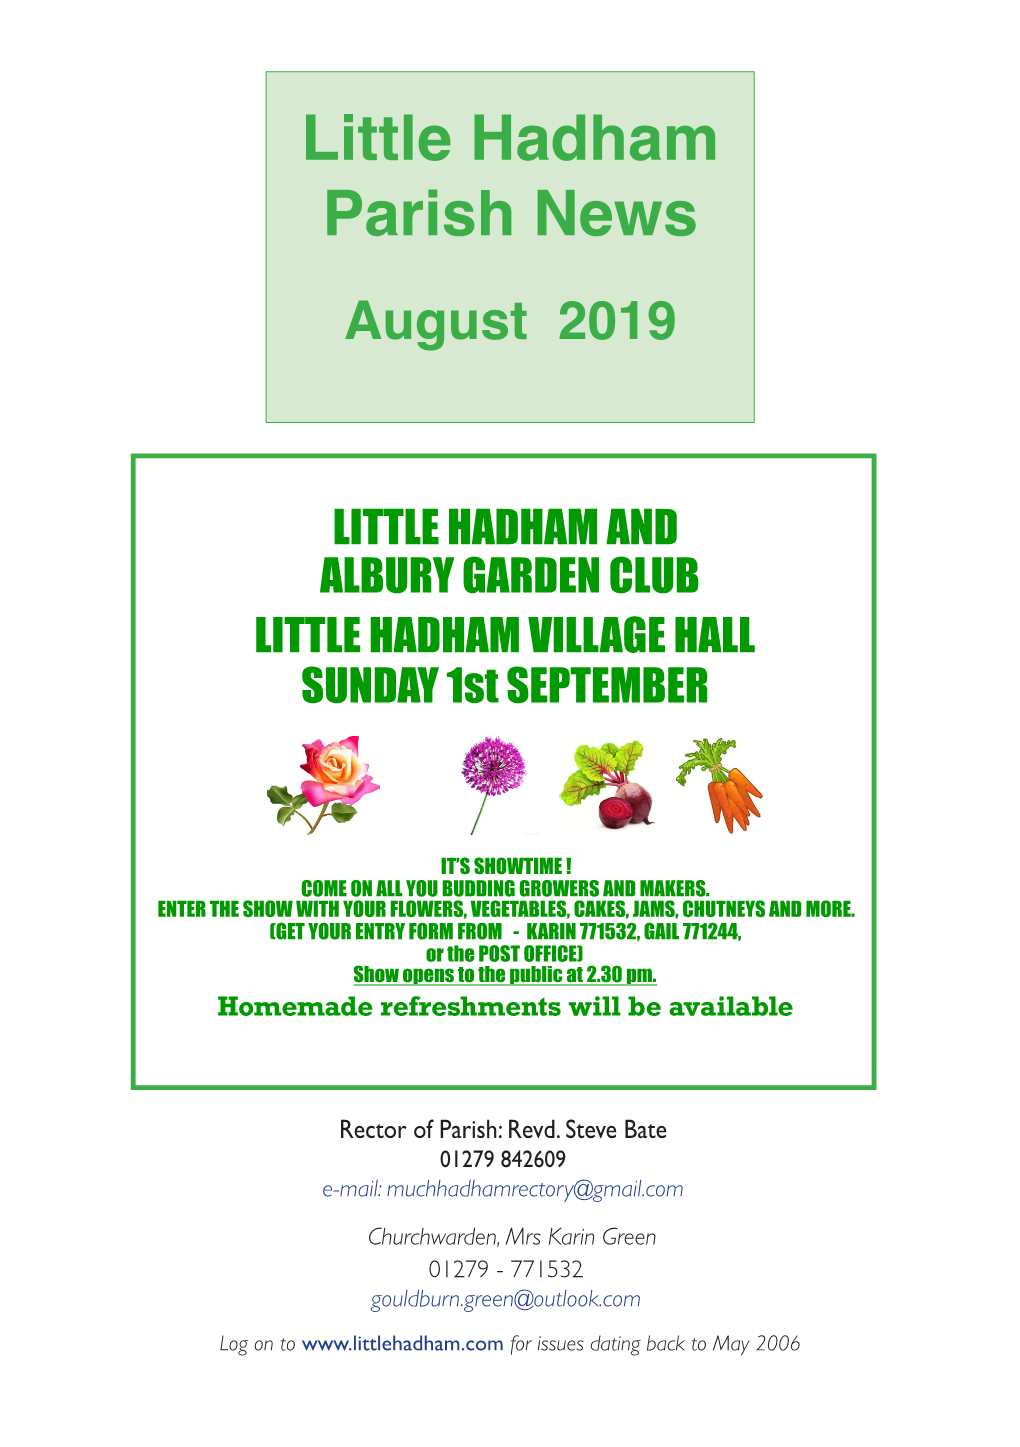 Little Hadham Parish News August 2019